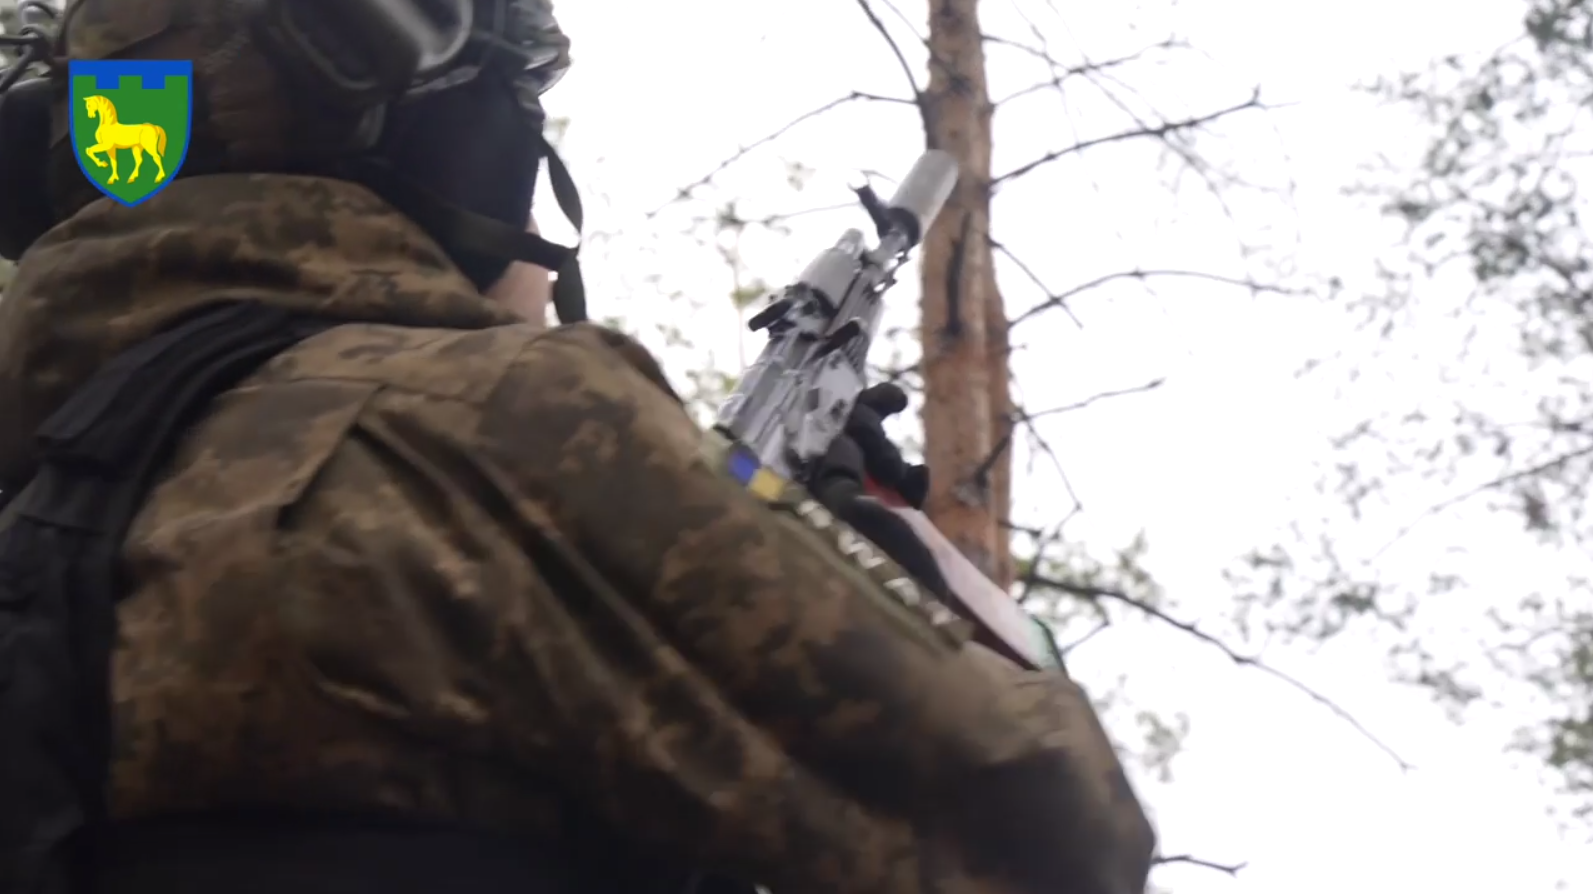 Захисник України збив з автомата два ворожих дрони за 5 хвилин і розкрив секрет вдалого полювання. Відео